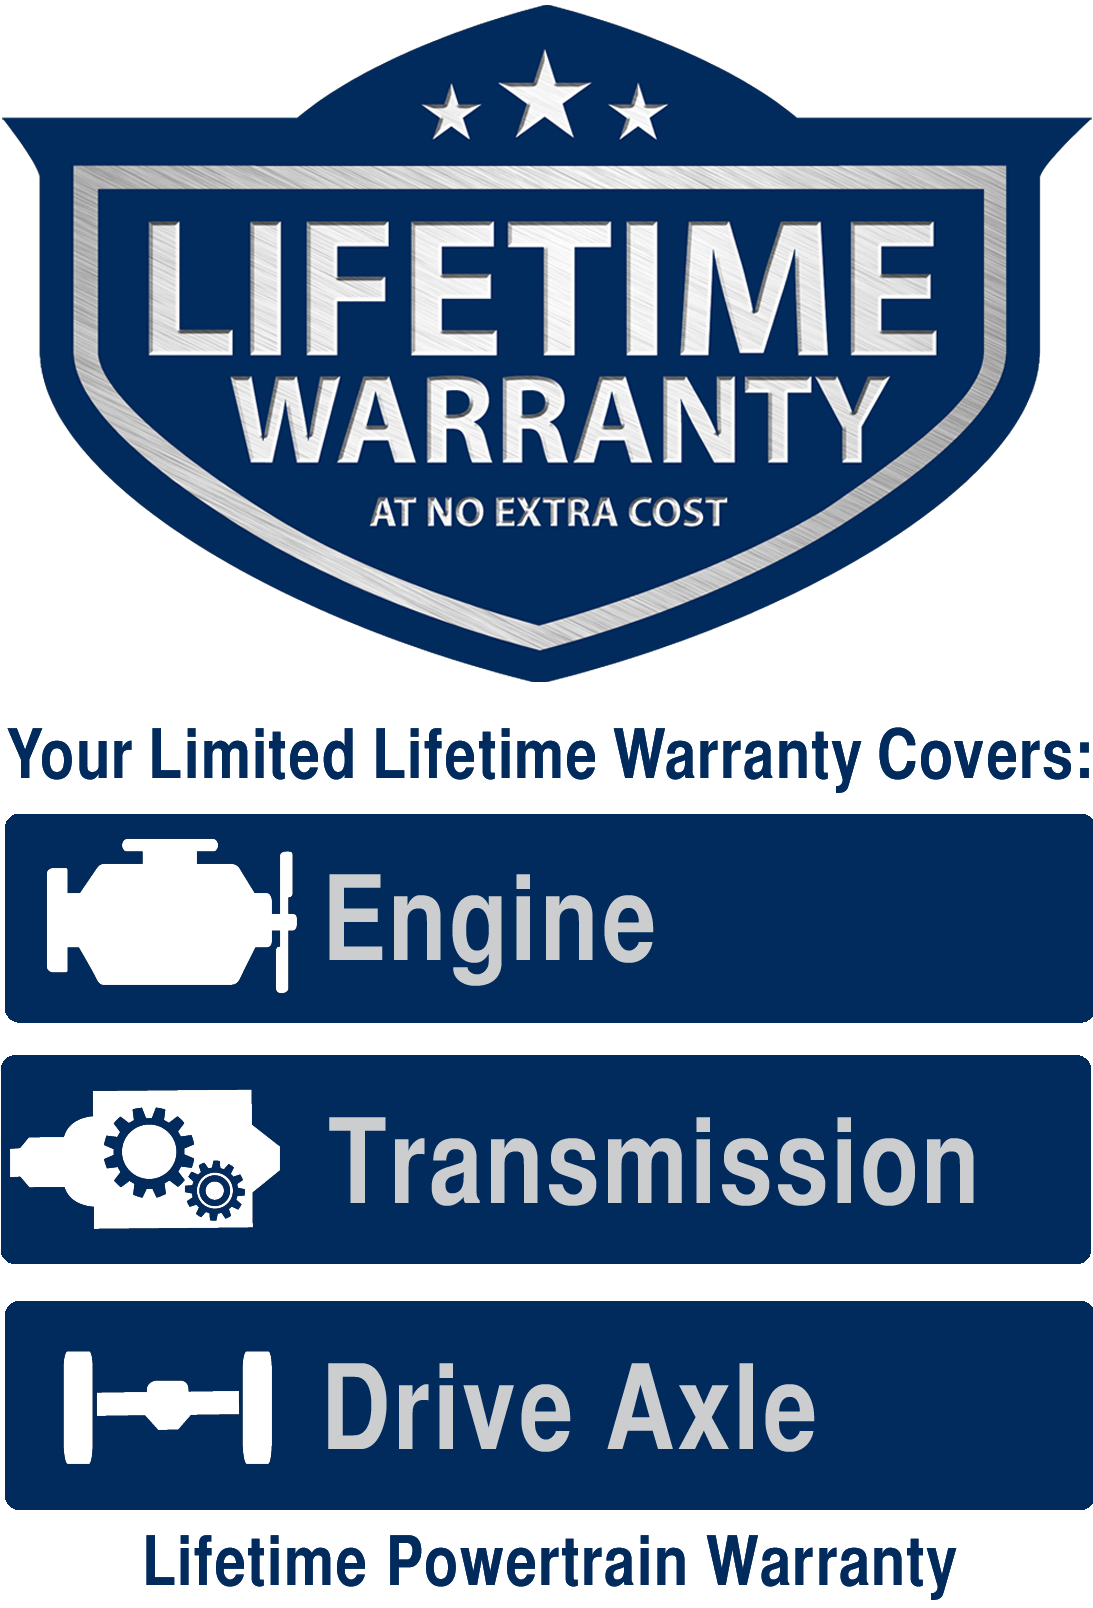 Lifetime Limited Powertrain Warranty | APPLE-SPORT CHEVROLET